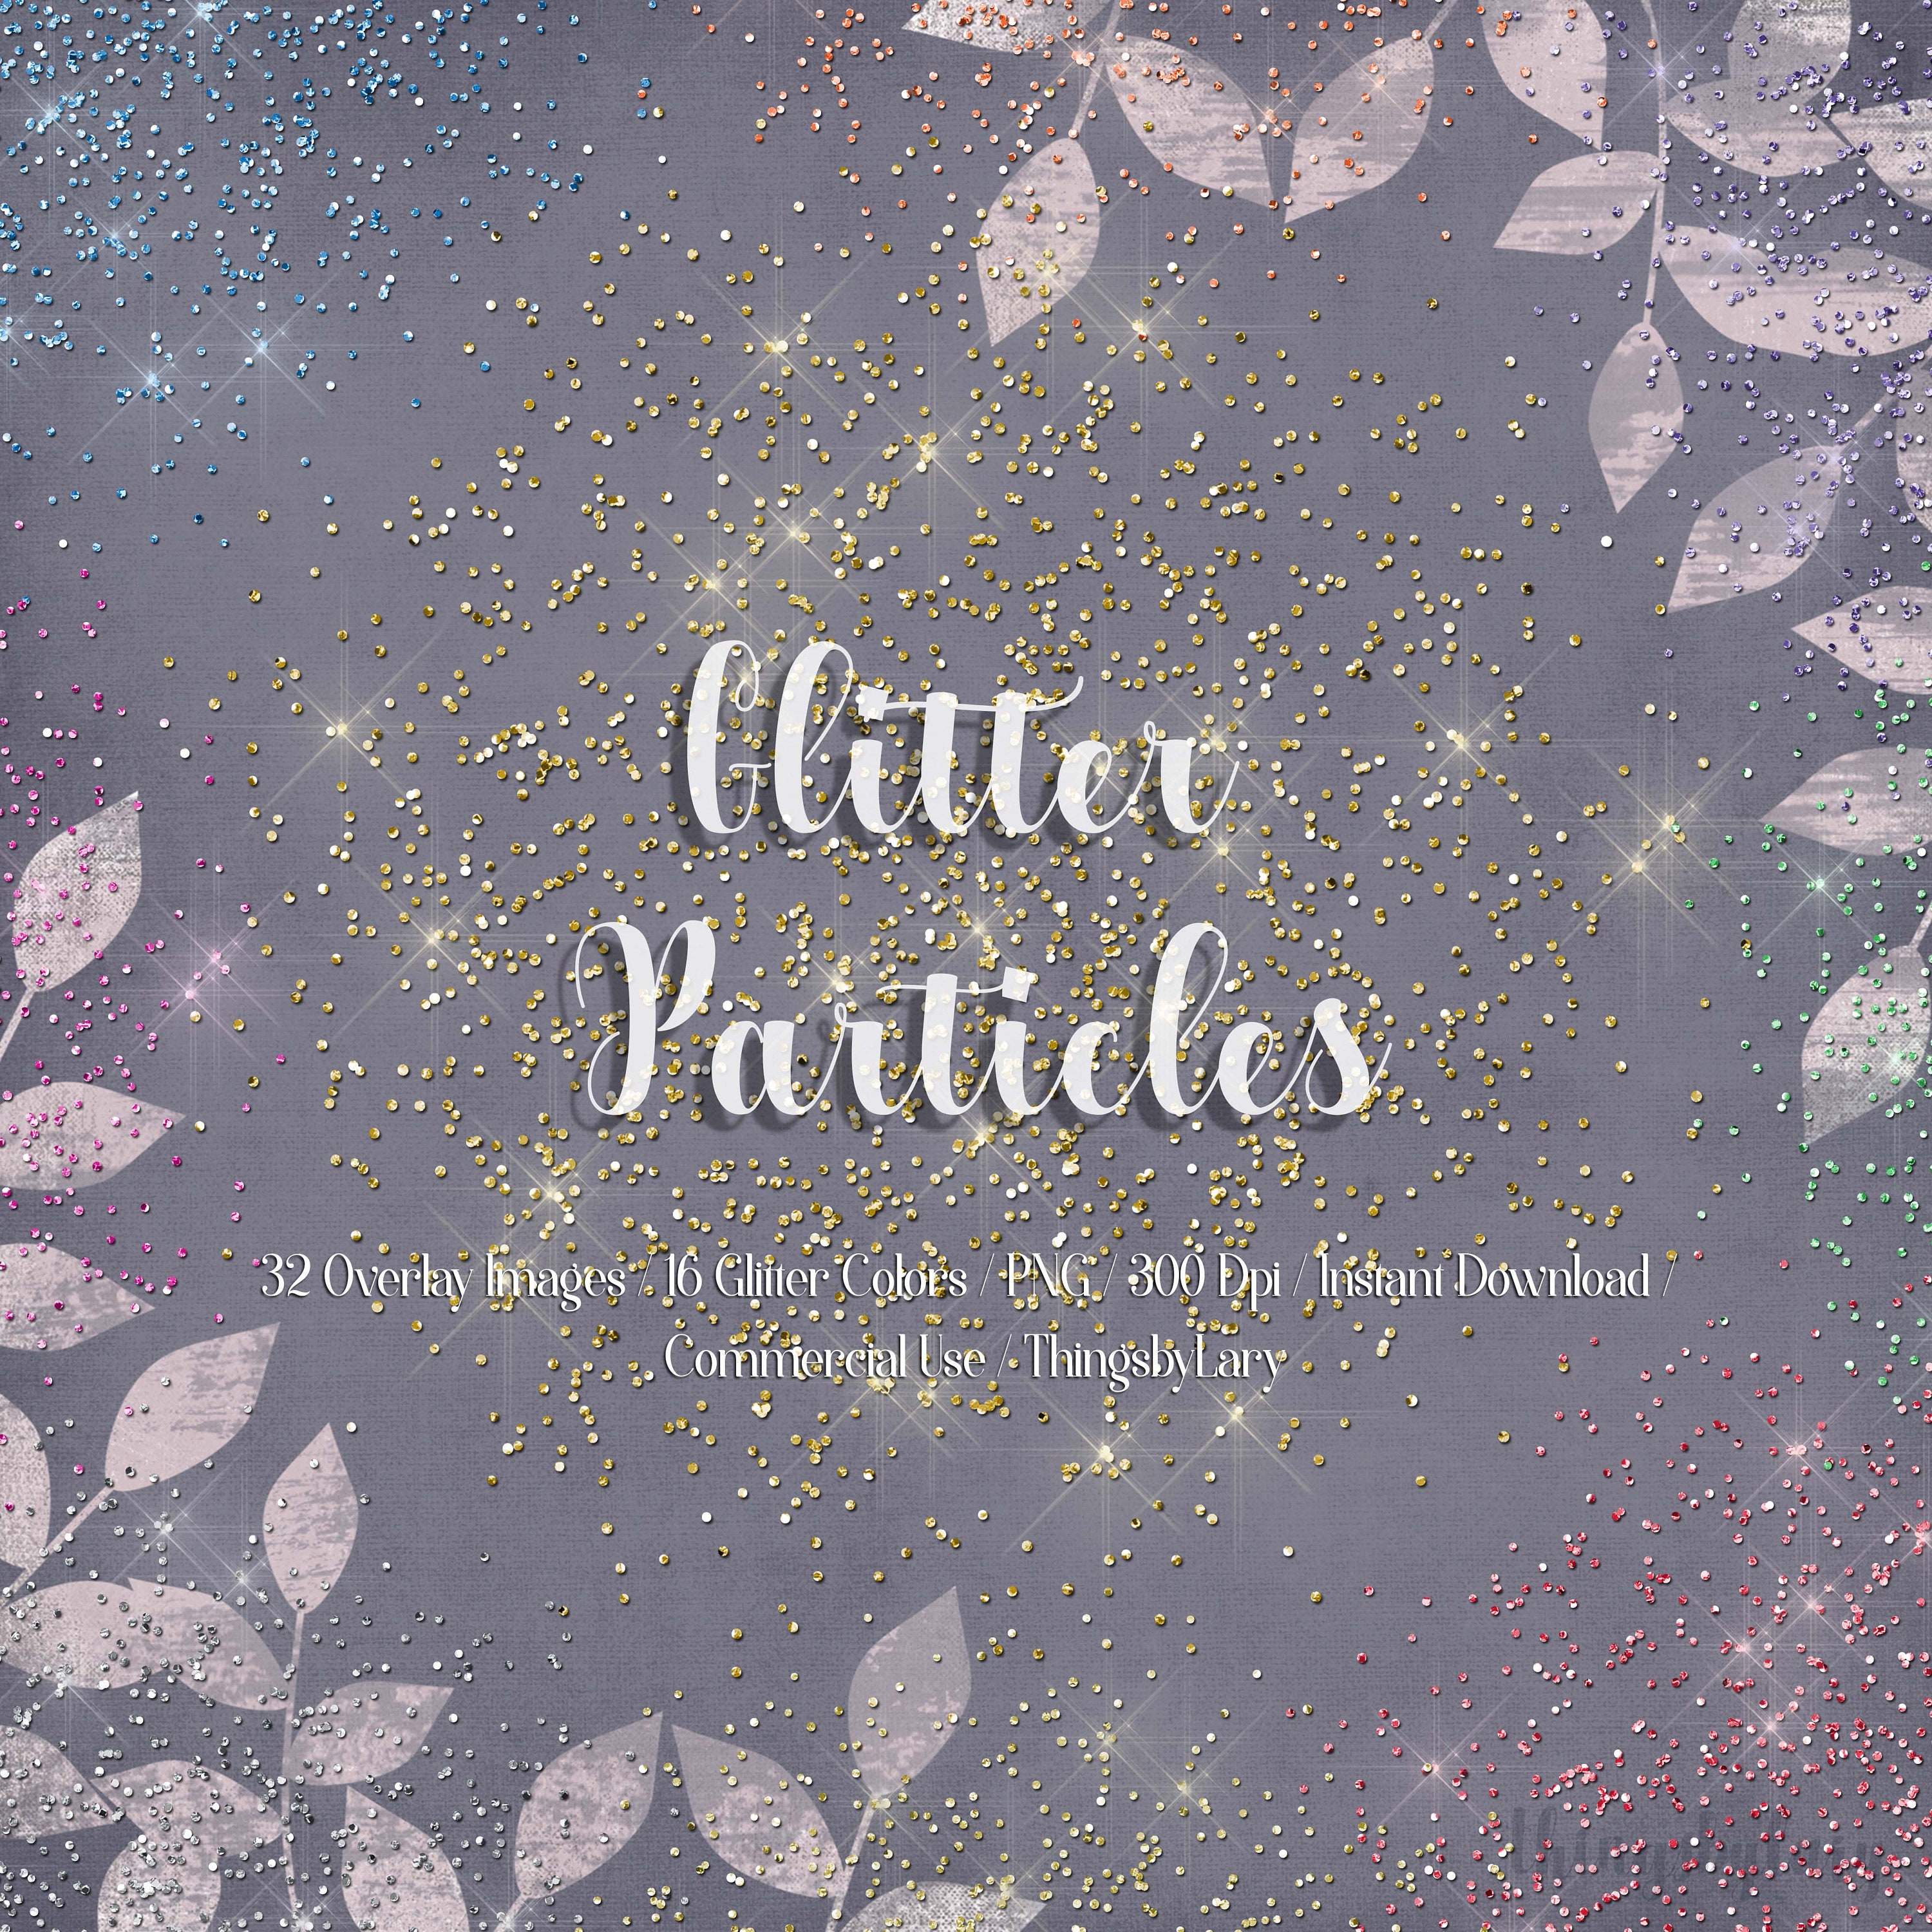 16 Glitter Confetti Overlay Images, 16 Colors, Glitter Borders, Glitter  Confetti Clipart, Digital Confetti, Glitter Overlay, Commercial Use 